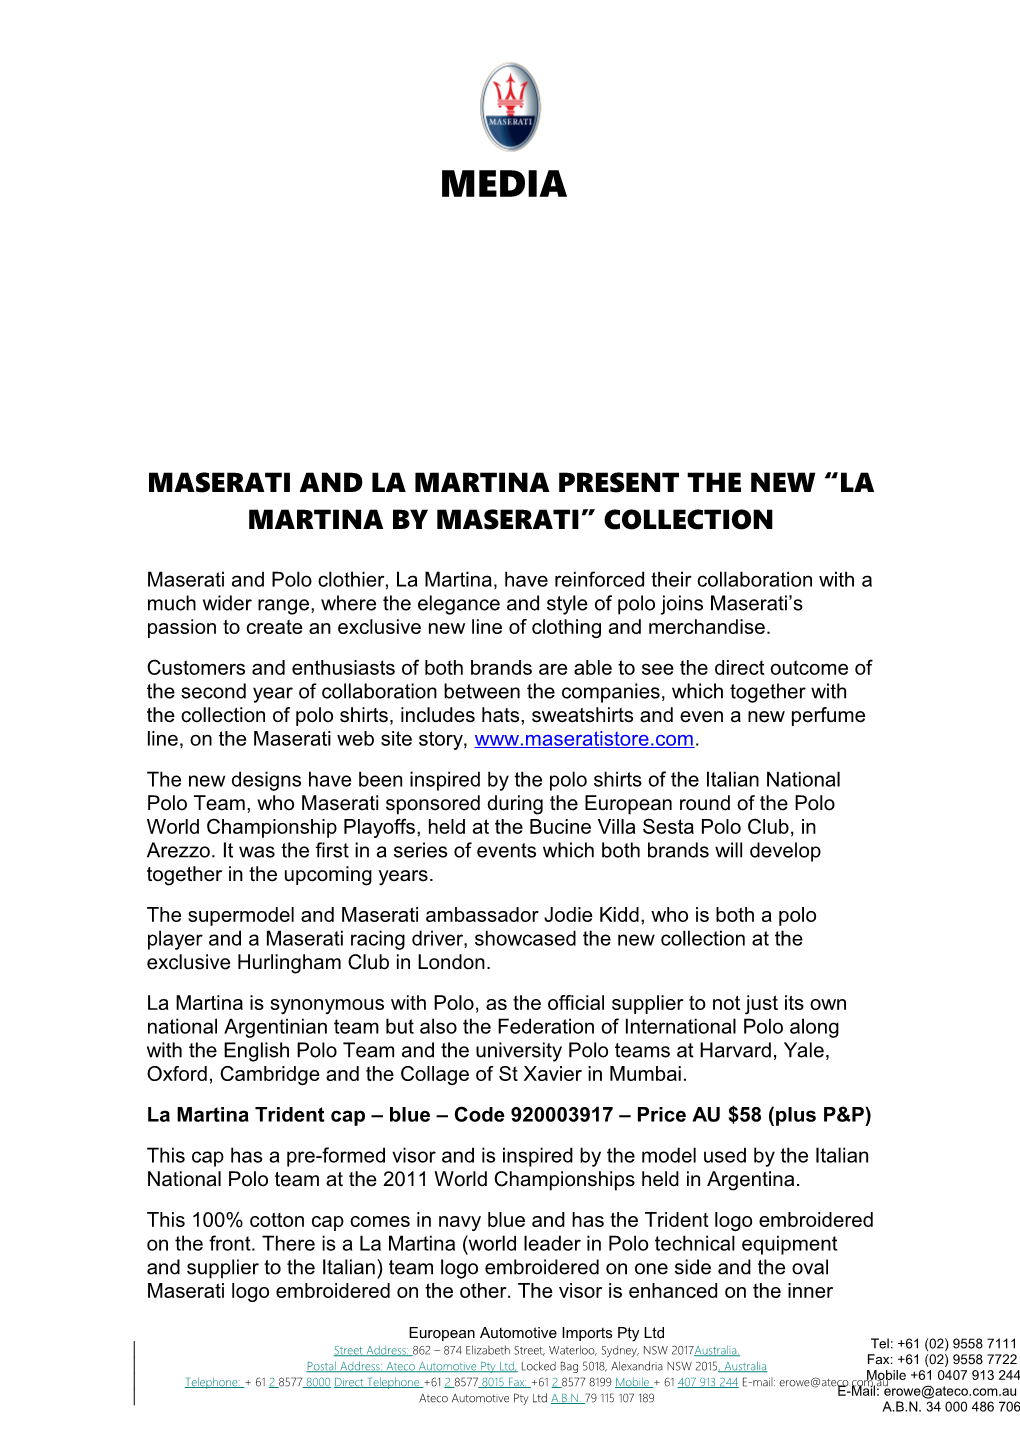 Maserati and La Martina Present the New La Martina by Maserati Collection